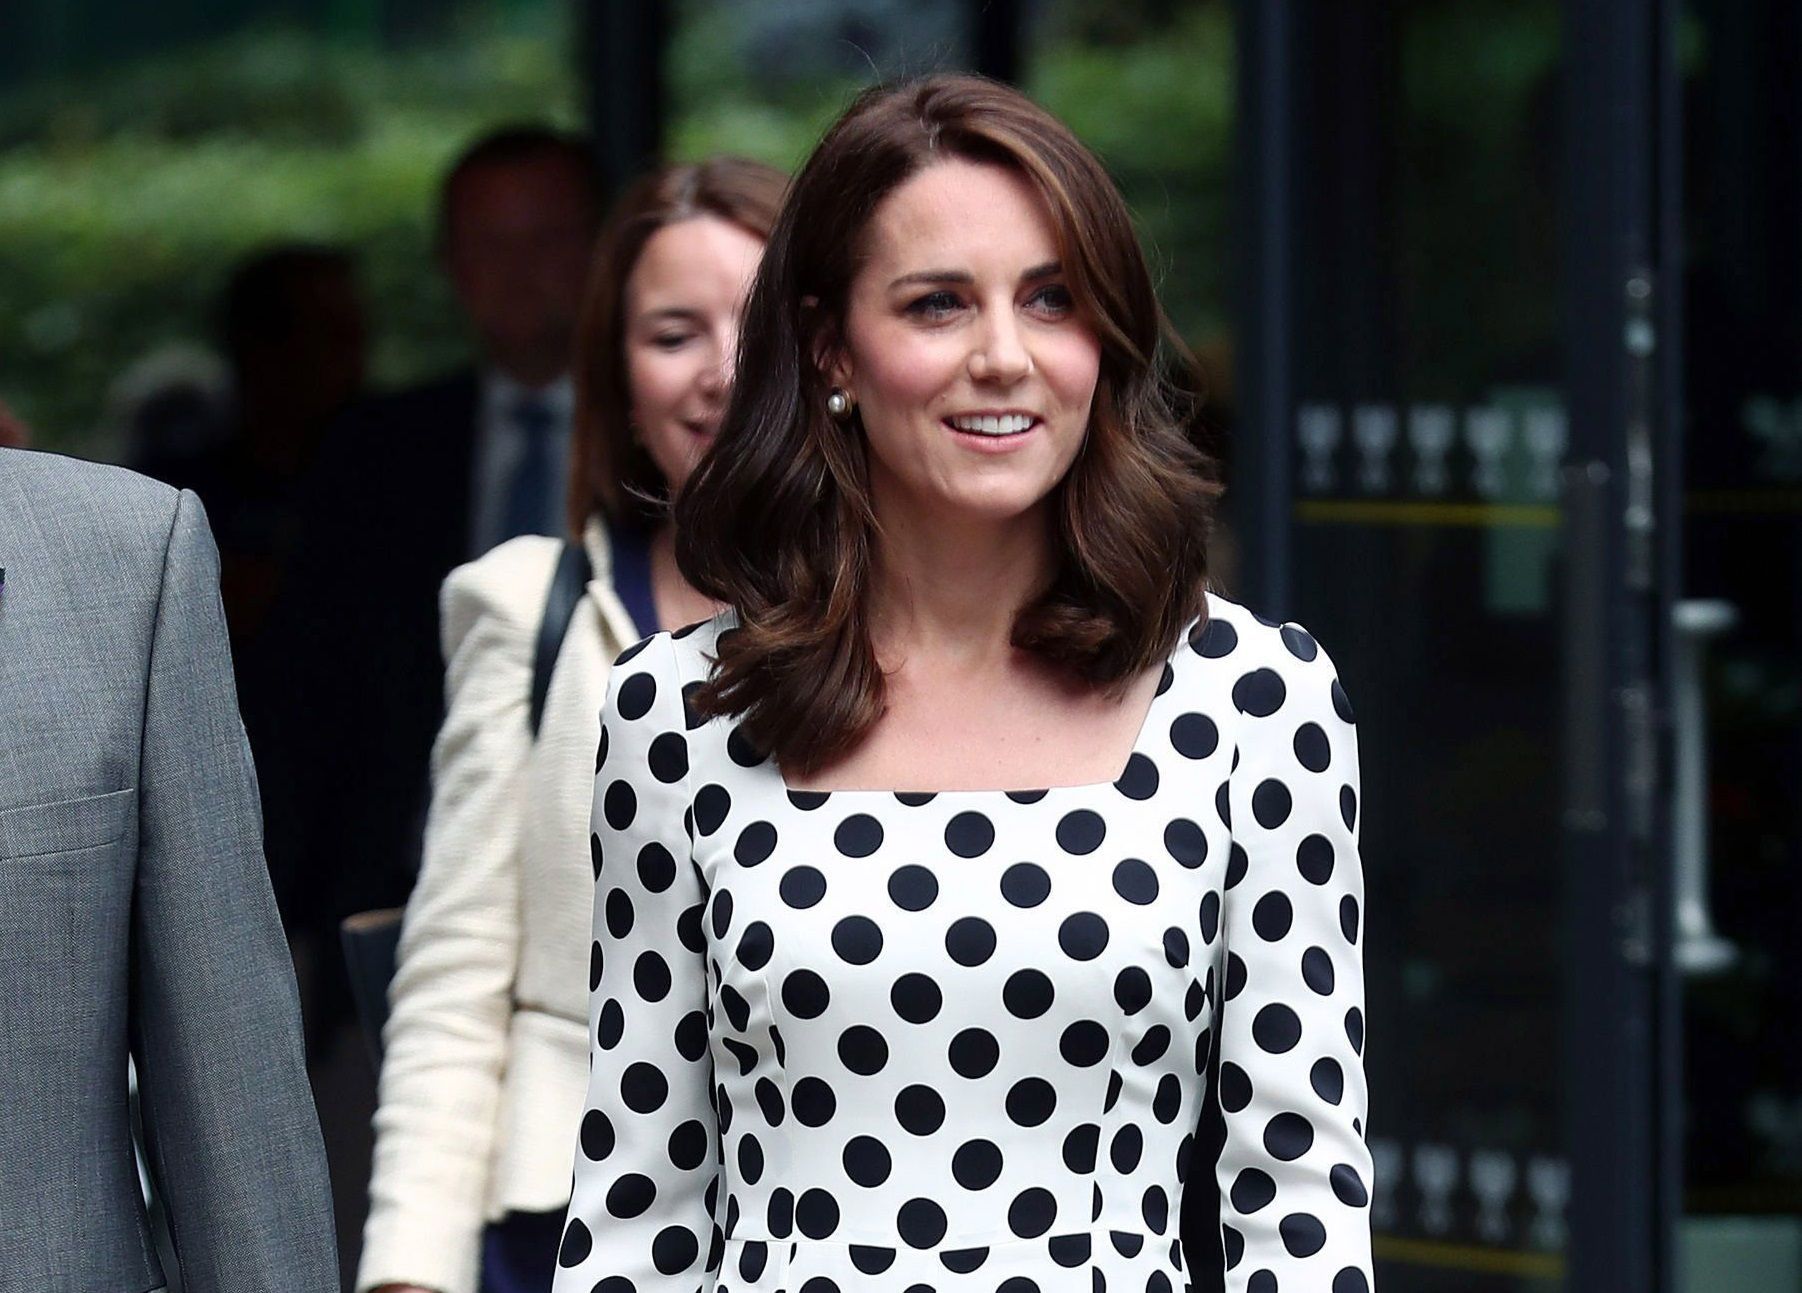 Il nuovo taglio di capelli di Kate Middleton